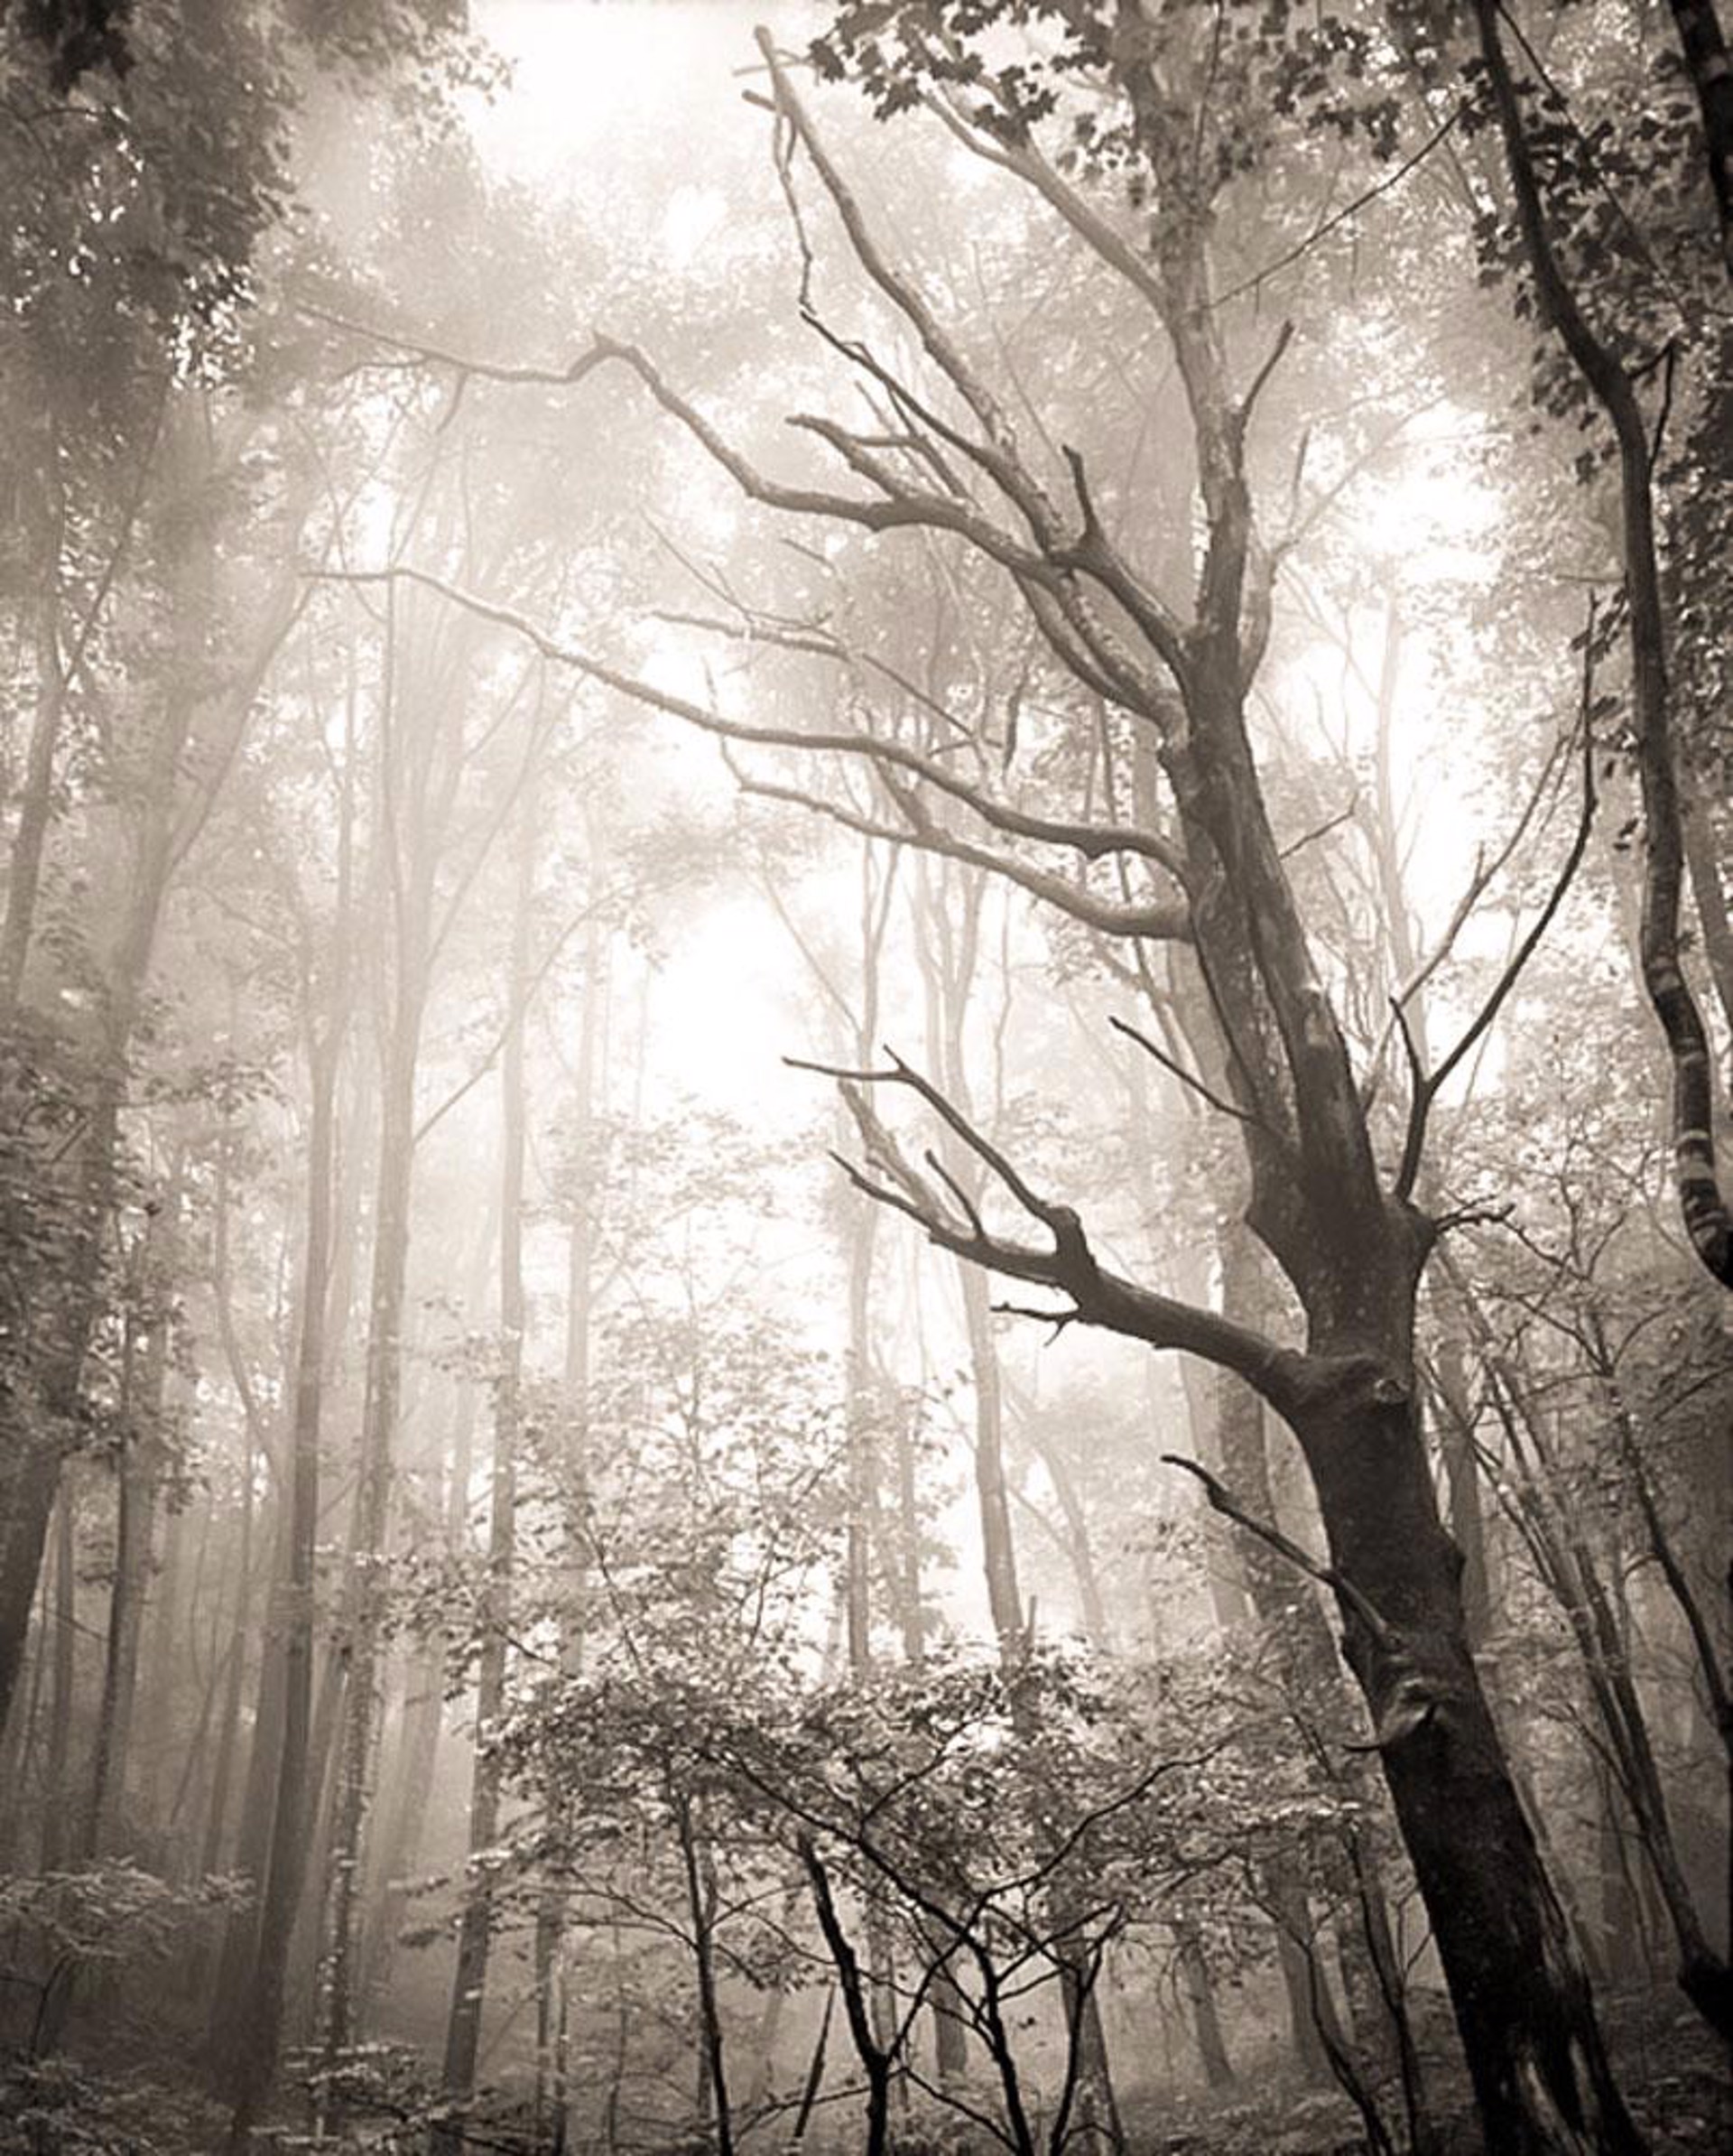 Dead Tree in the Fog #10 by Frank Hunter